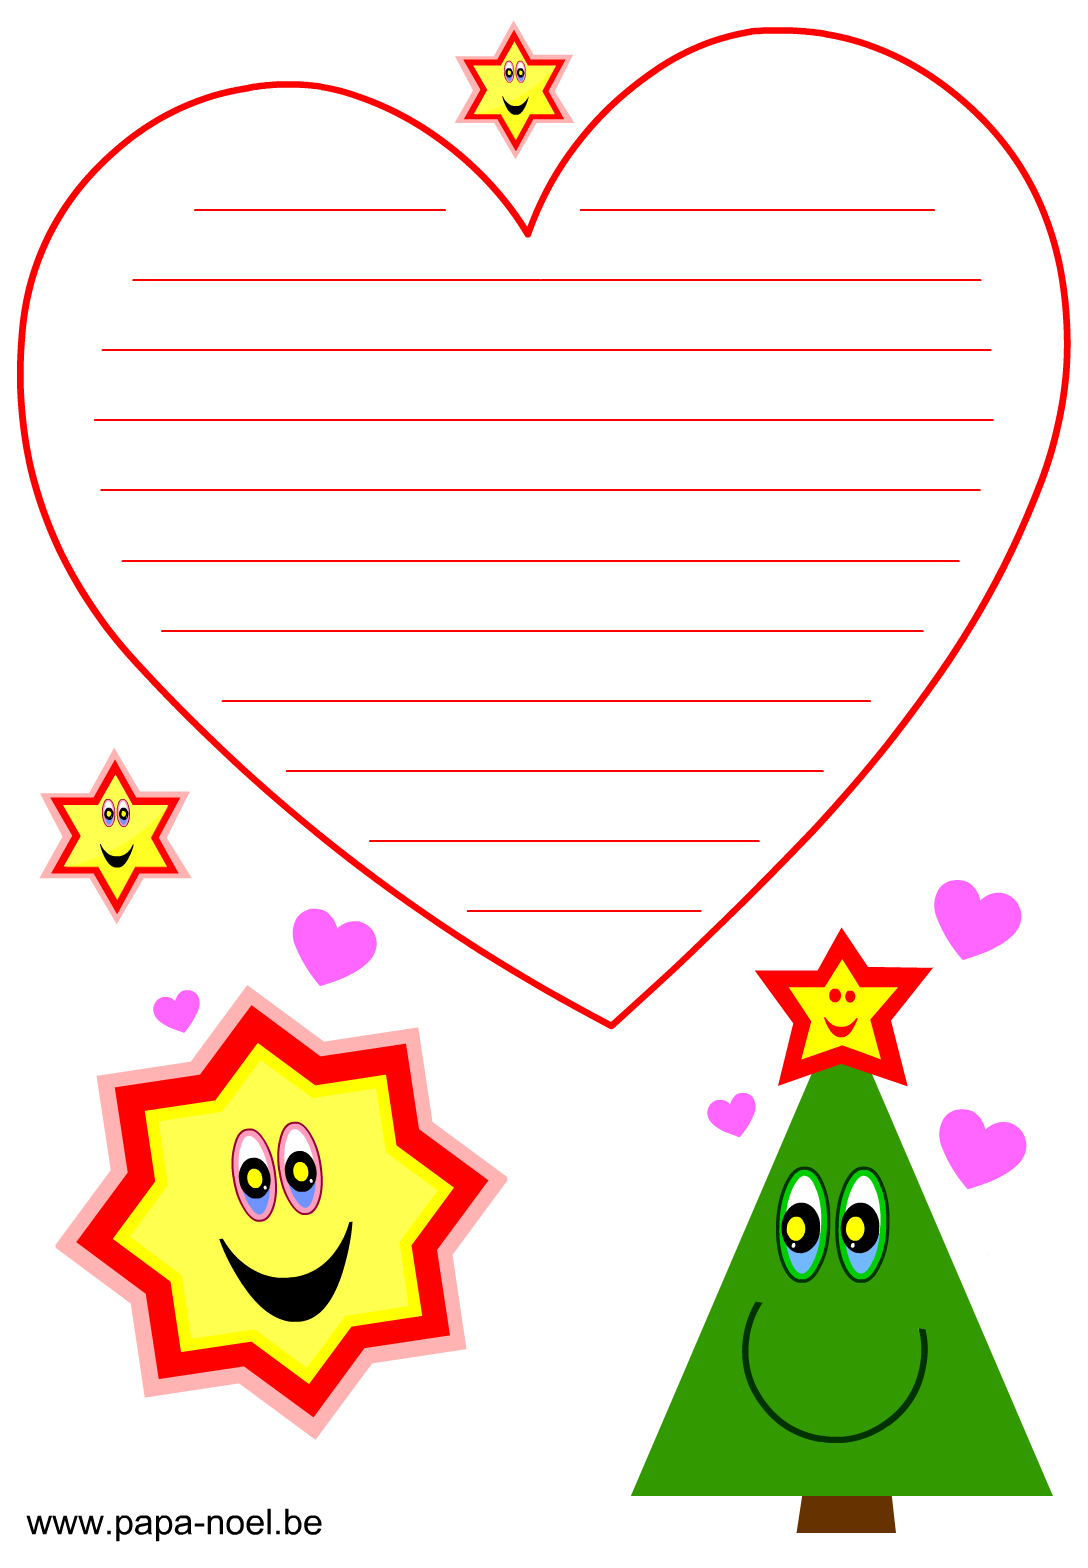 enfant tenant une lettre avec un coeur en papier rouge, une lettre